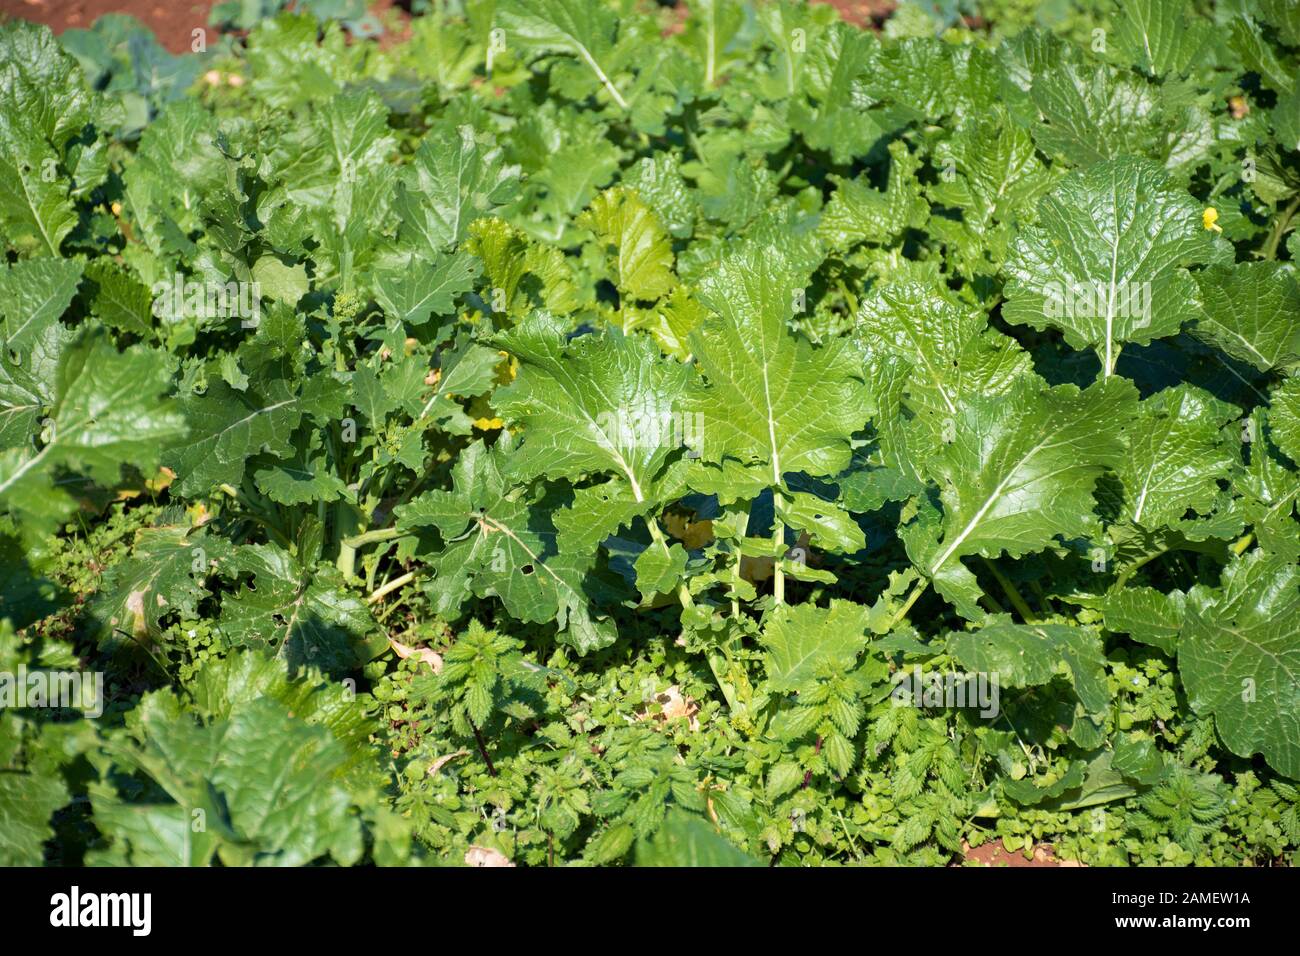 Cime di Rapa, rapini oder Brokkoli Rabe in einem Feld, grüne Gemüse aus der Familie der Kreuzblütler, veggies, mediterrane Küche Stockfoto